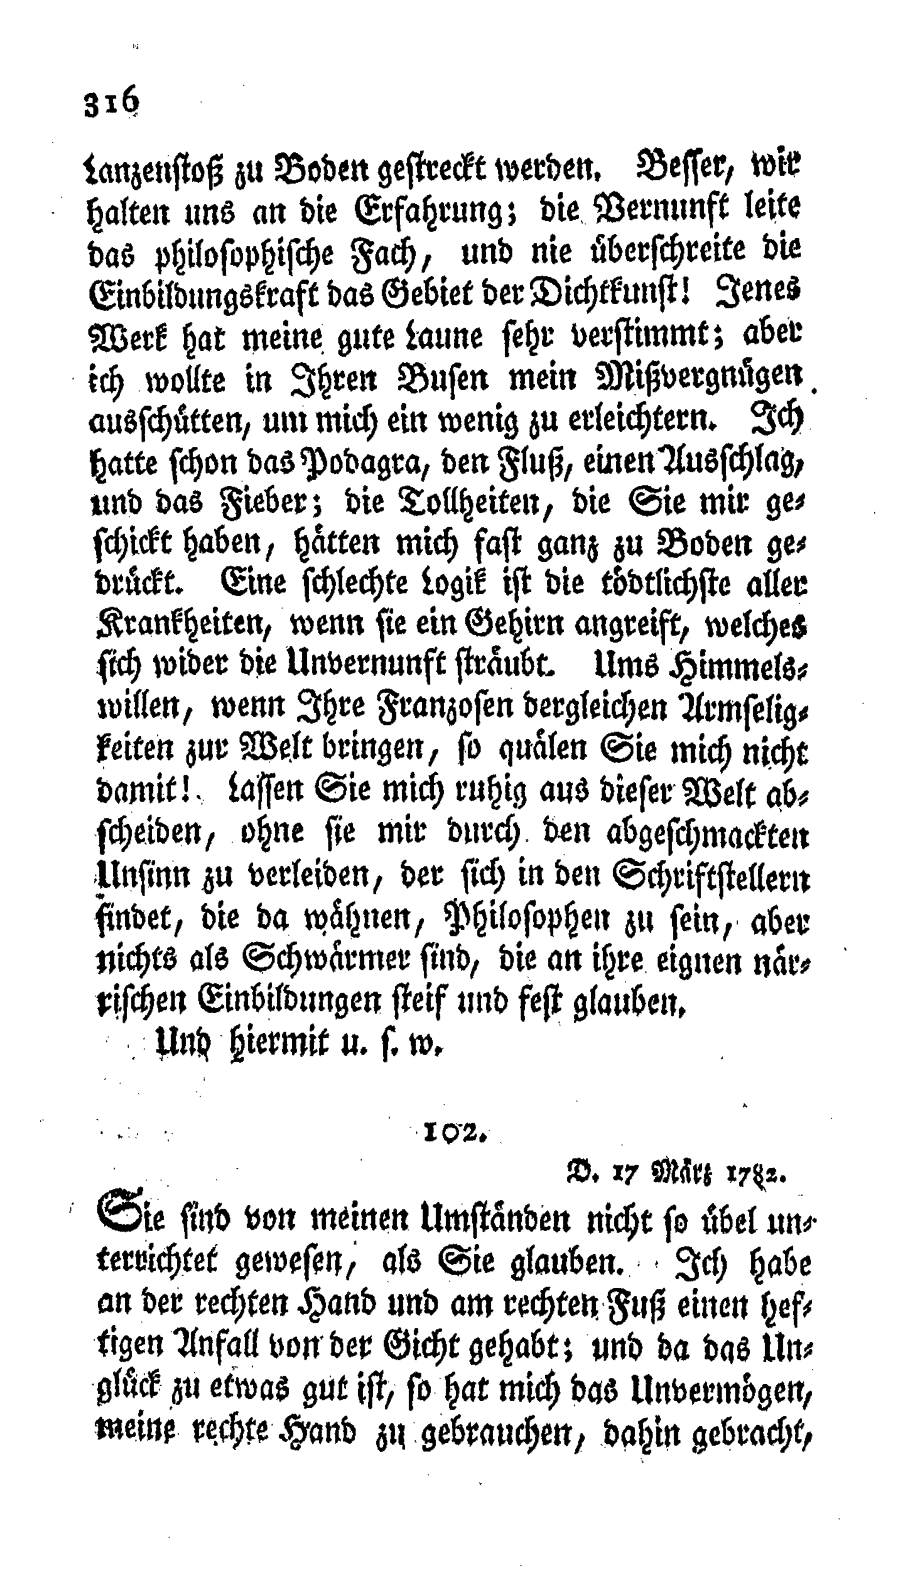 S. 316, Obj. 2